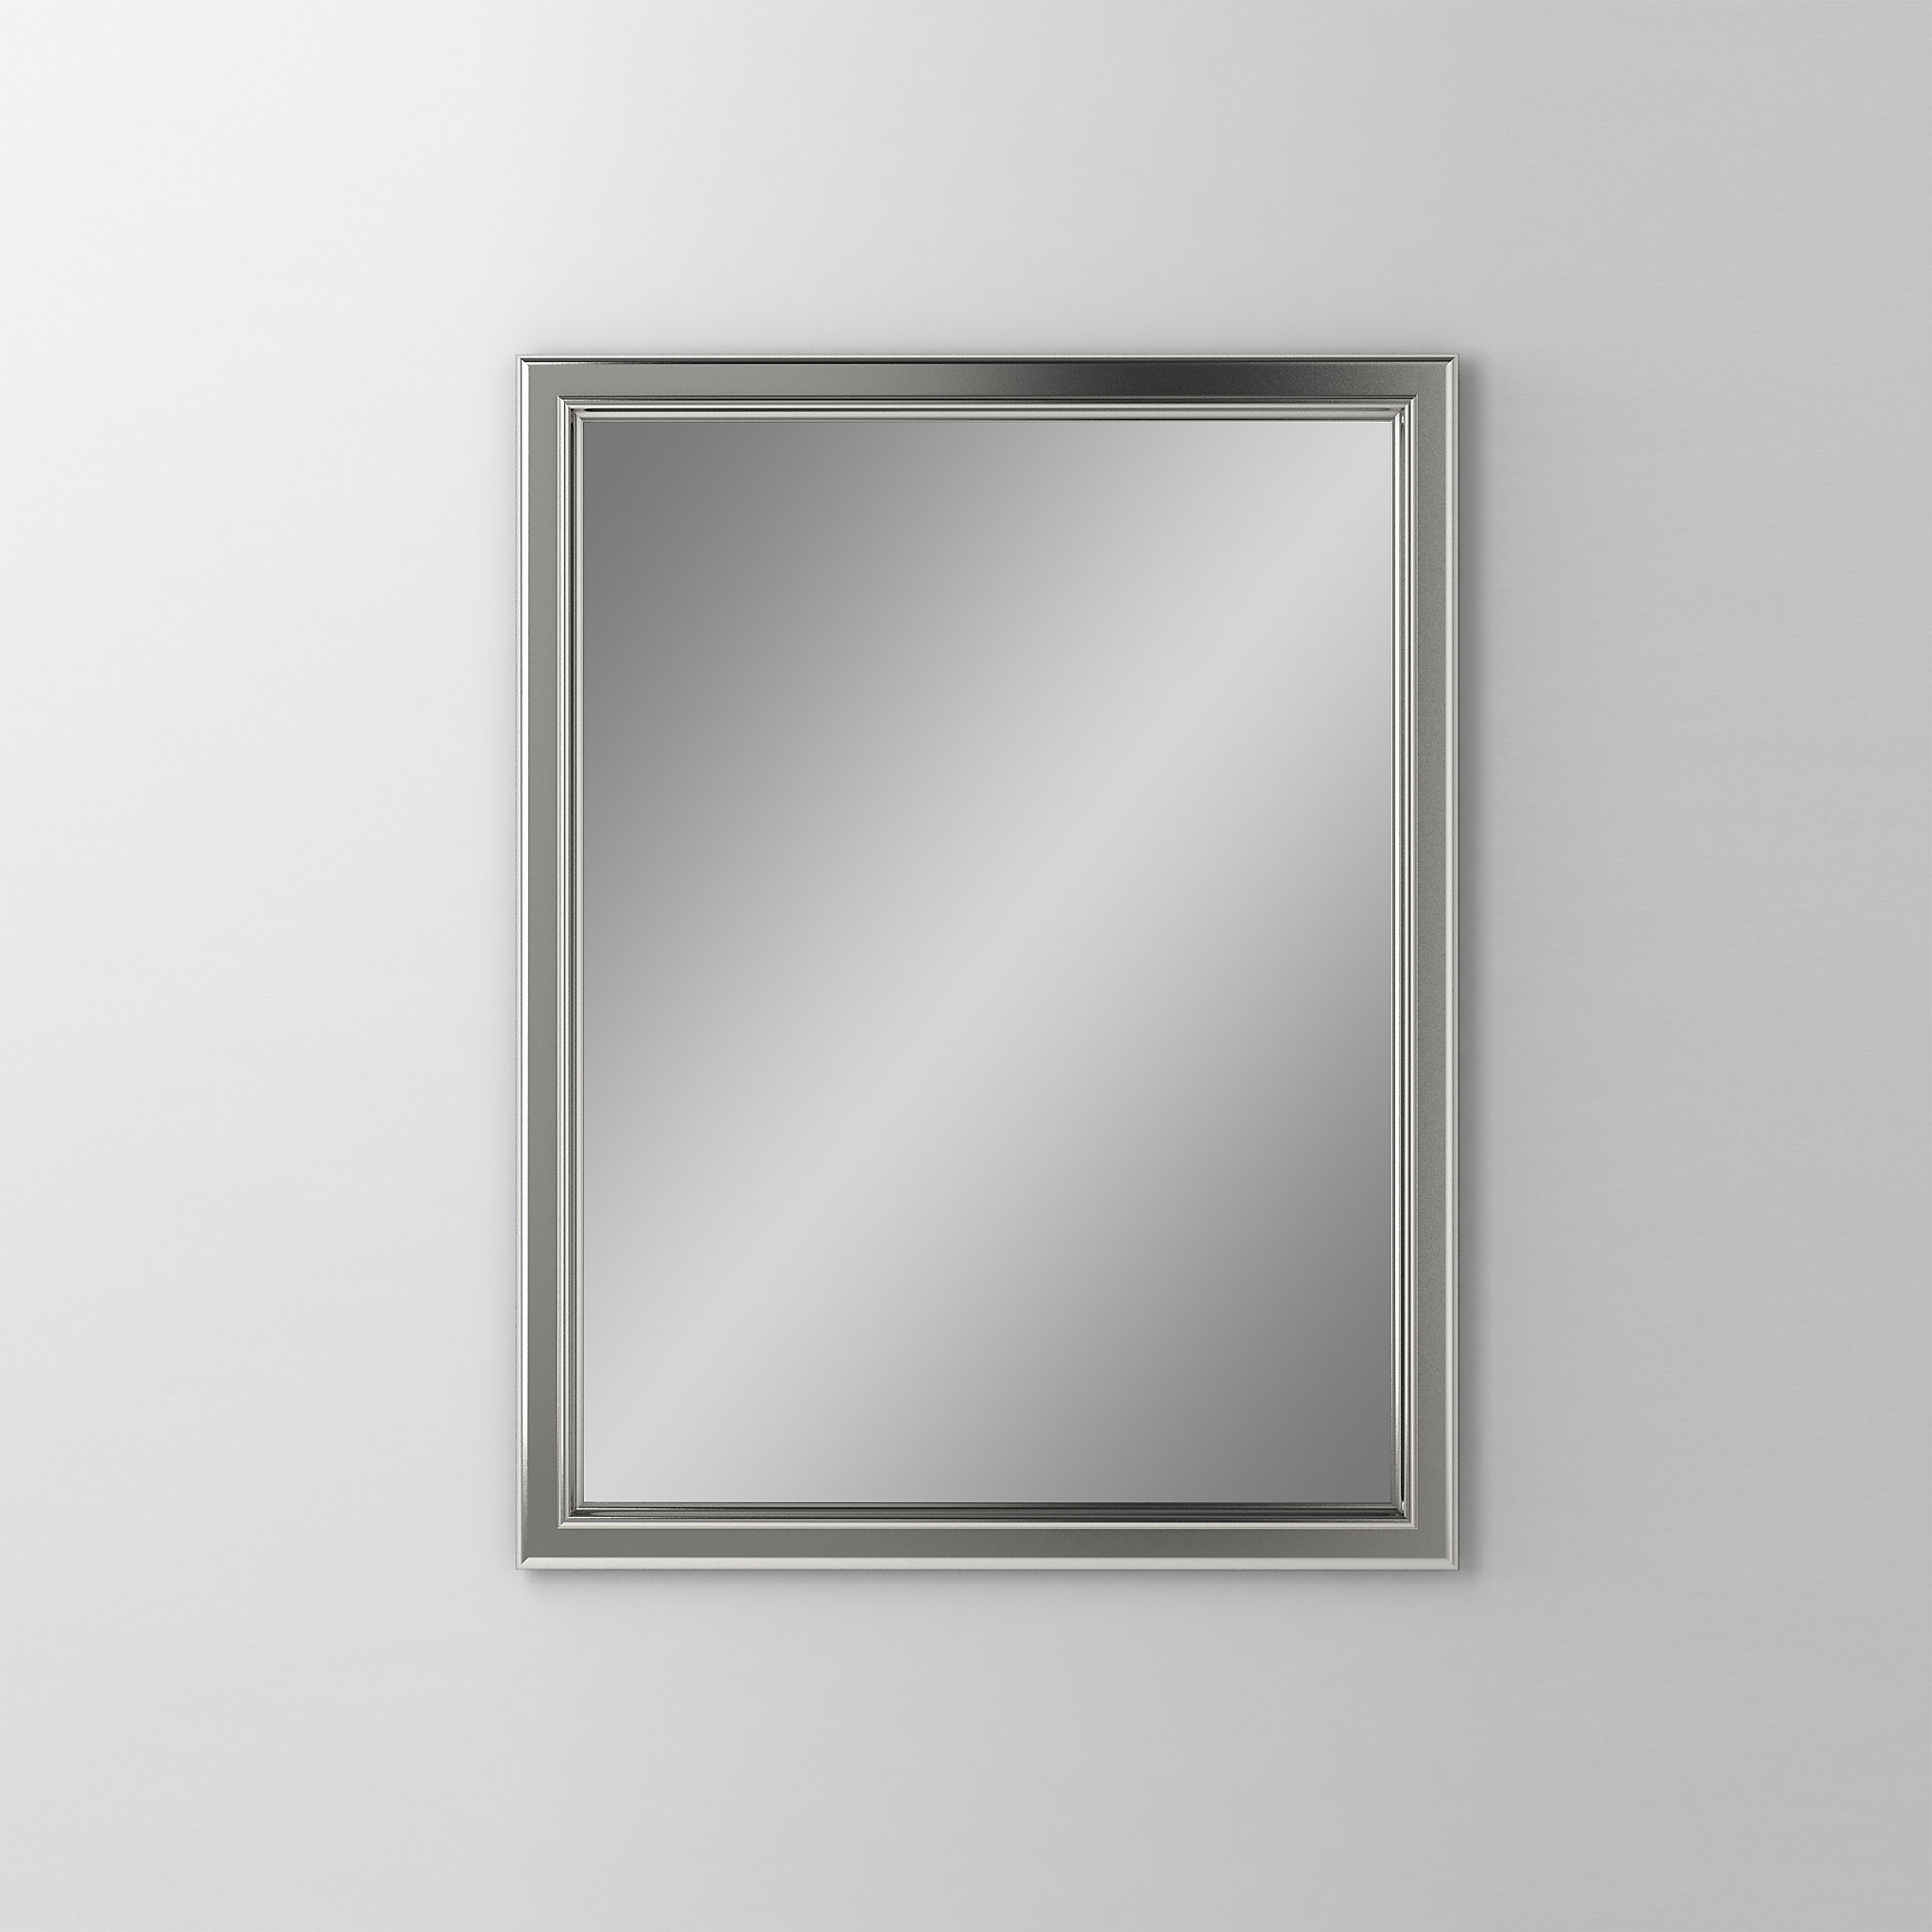 Robern DM2430BM70Main Line Mirror, 24" x 30" x 1-5/8", Bryn Mawr Frame, Satin Nickel